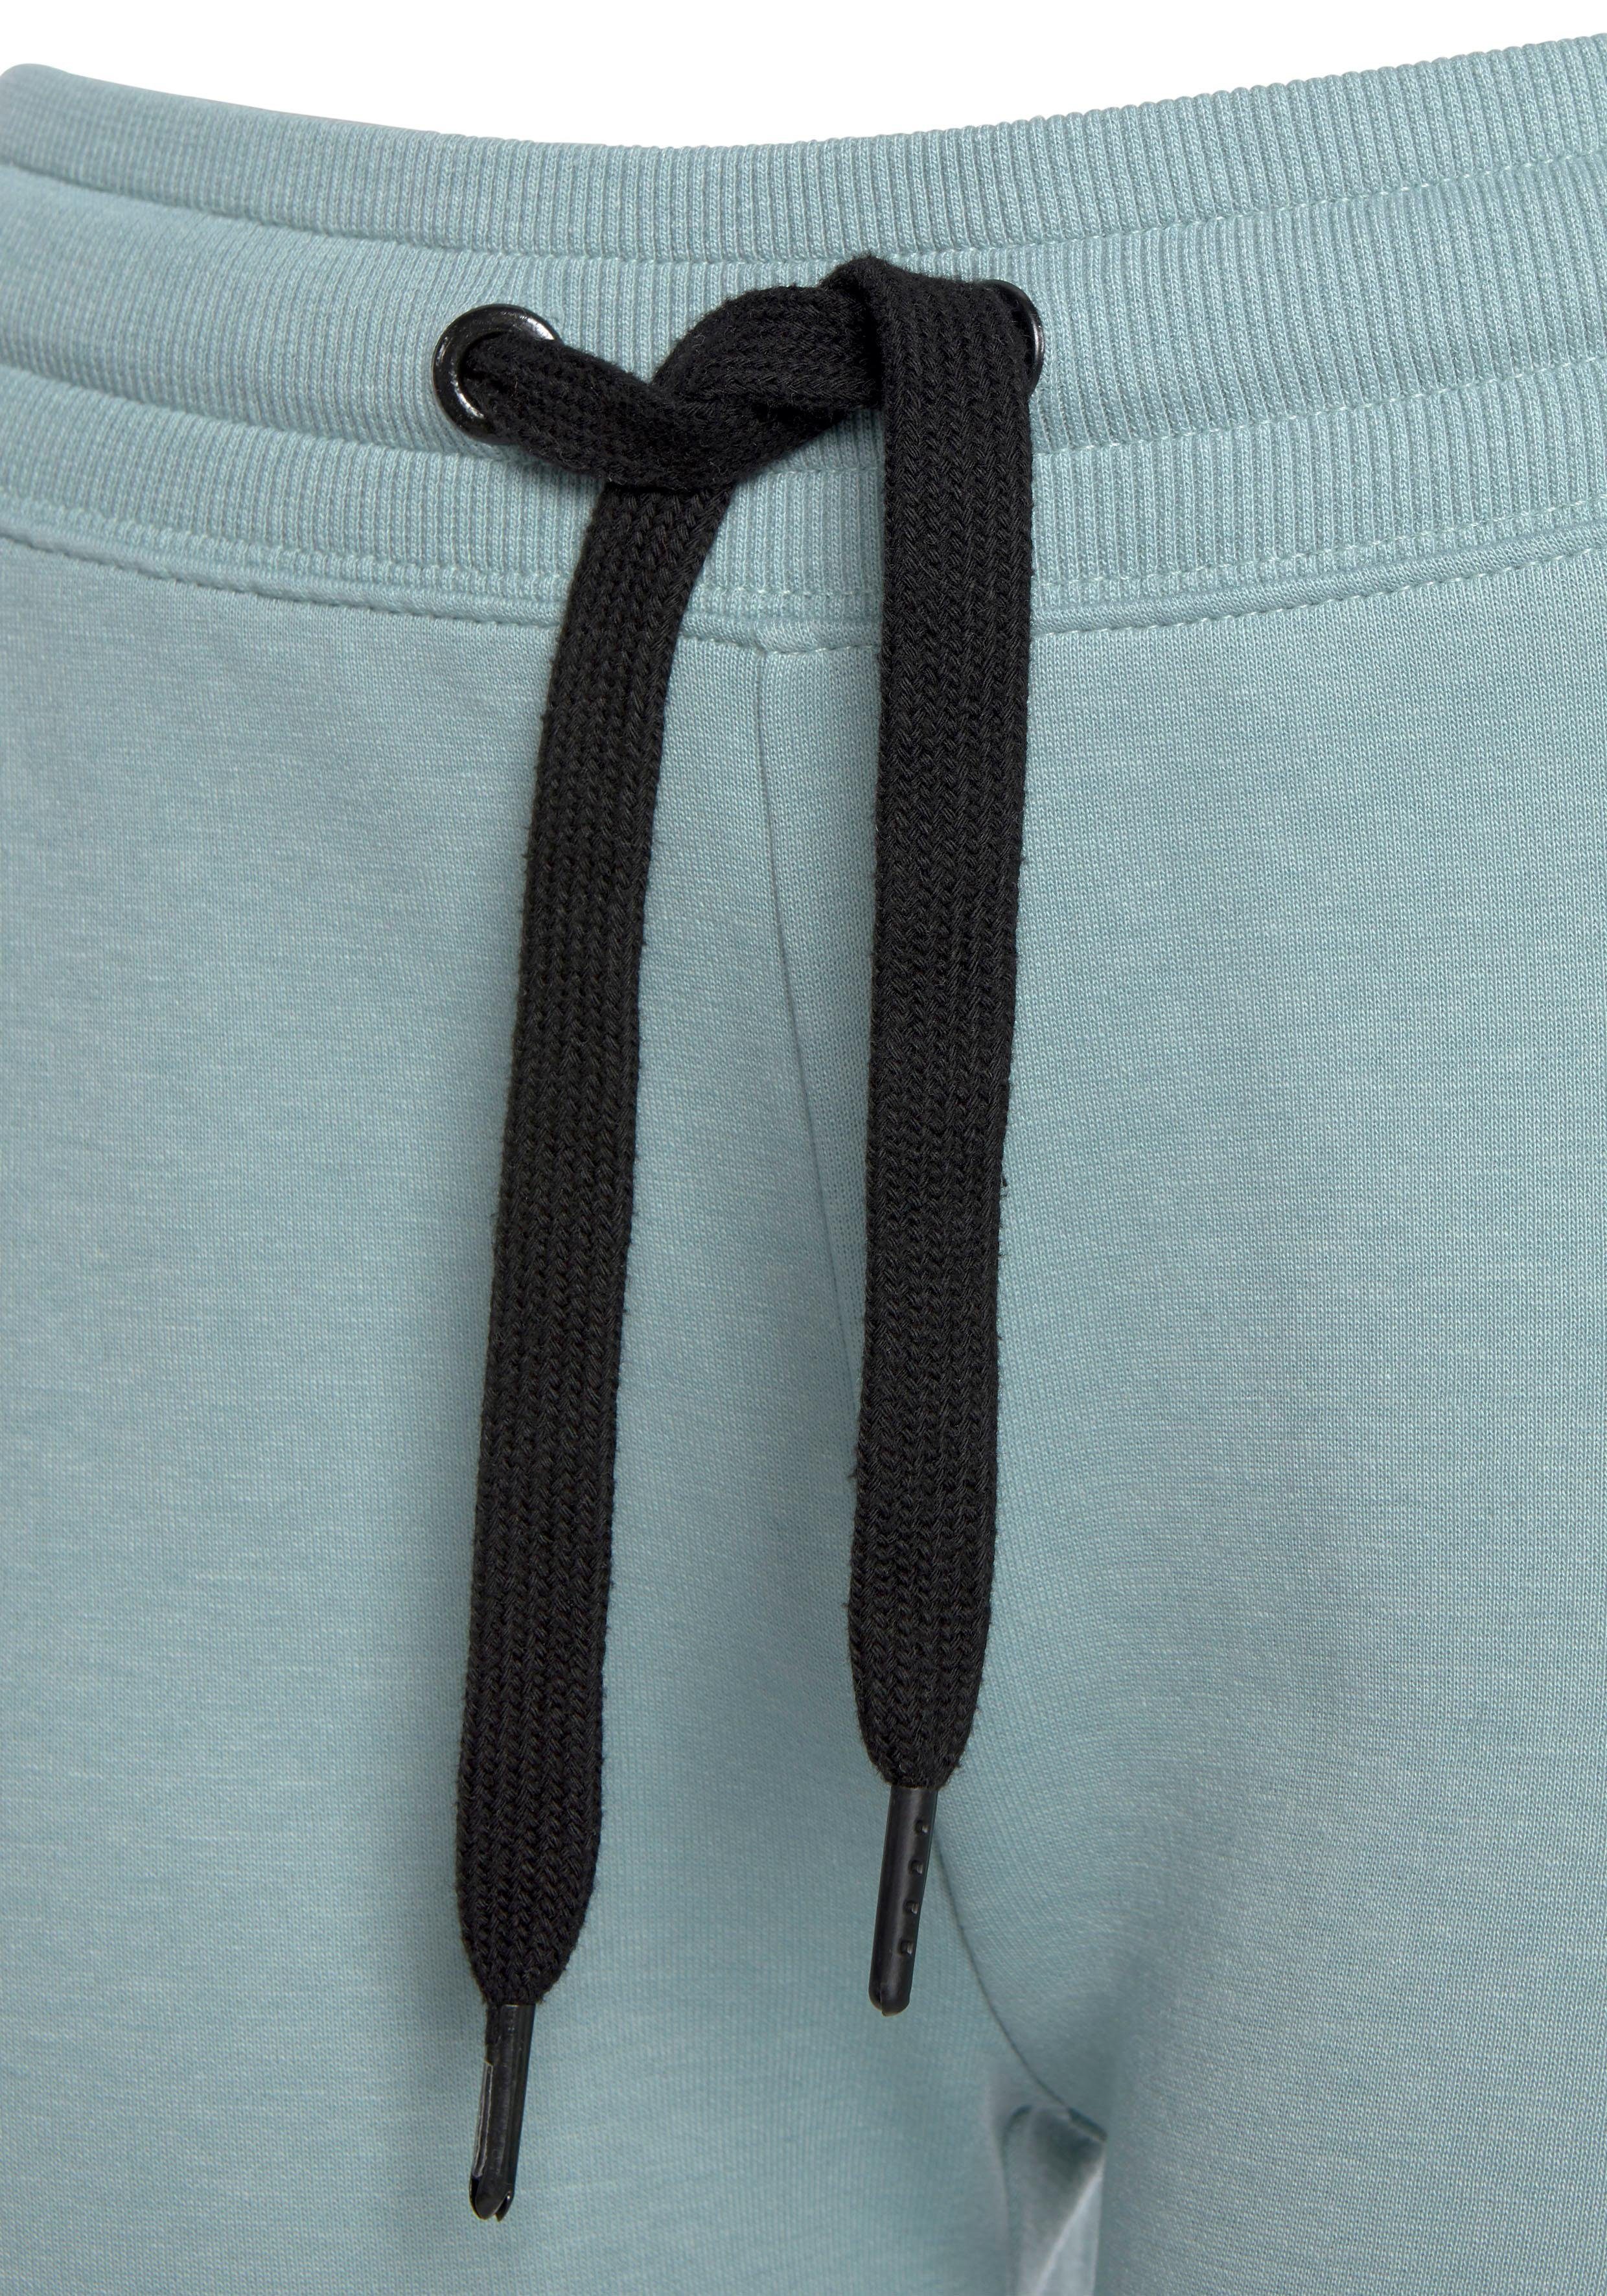 Relaxshorts mint-schwarz Loungewear mit Seitenstreifen, Loungewear Bench.